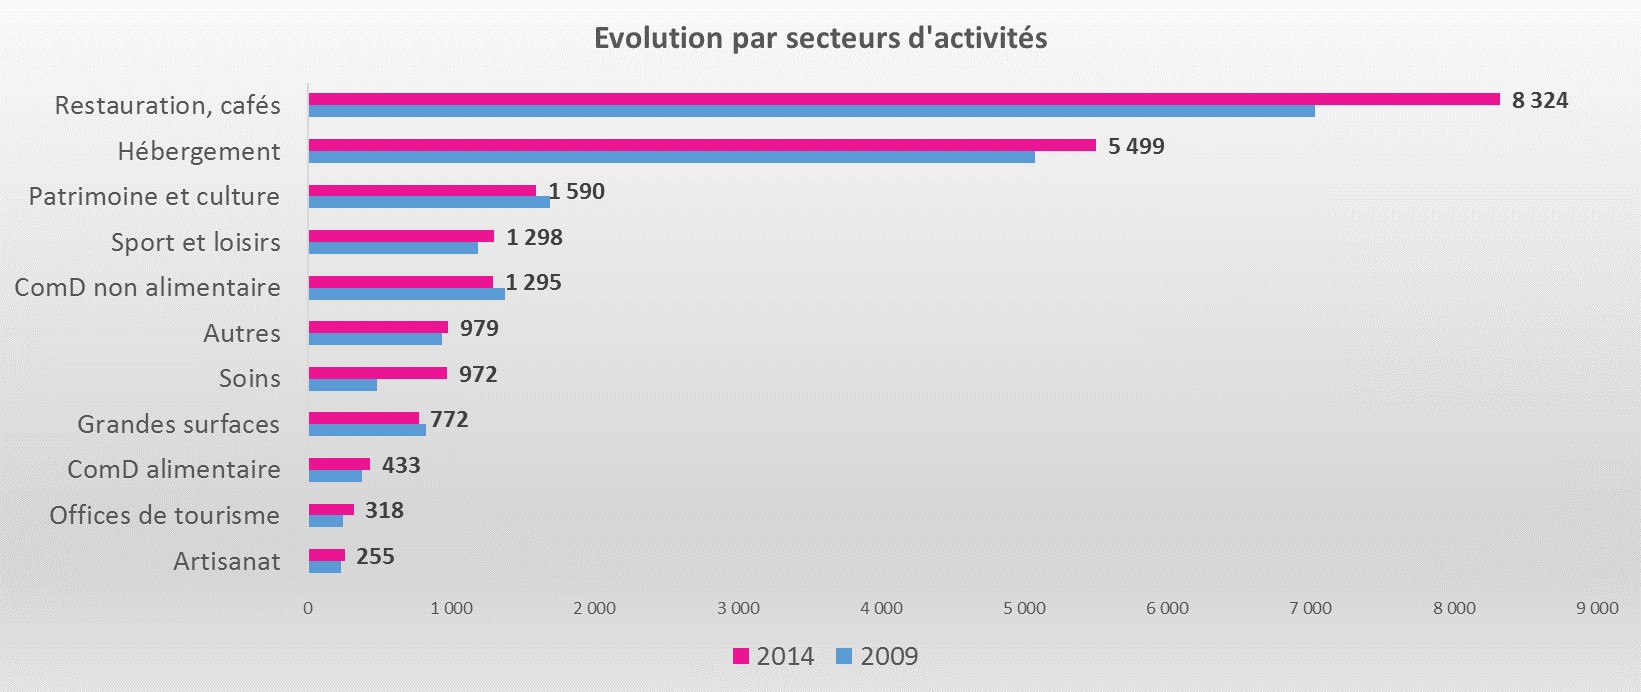 obsEmplois touristiques par secteur 2009 2014.jpg